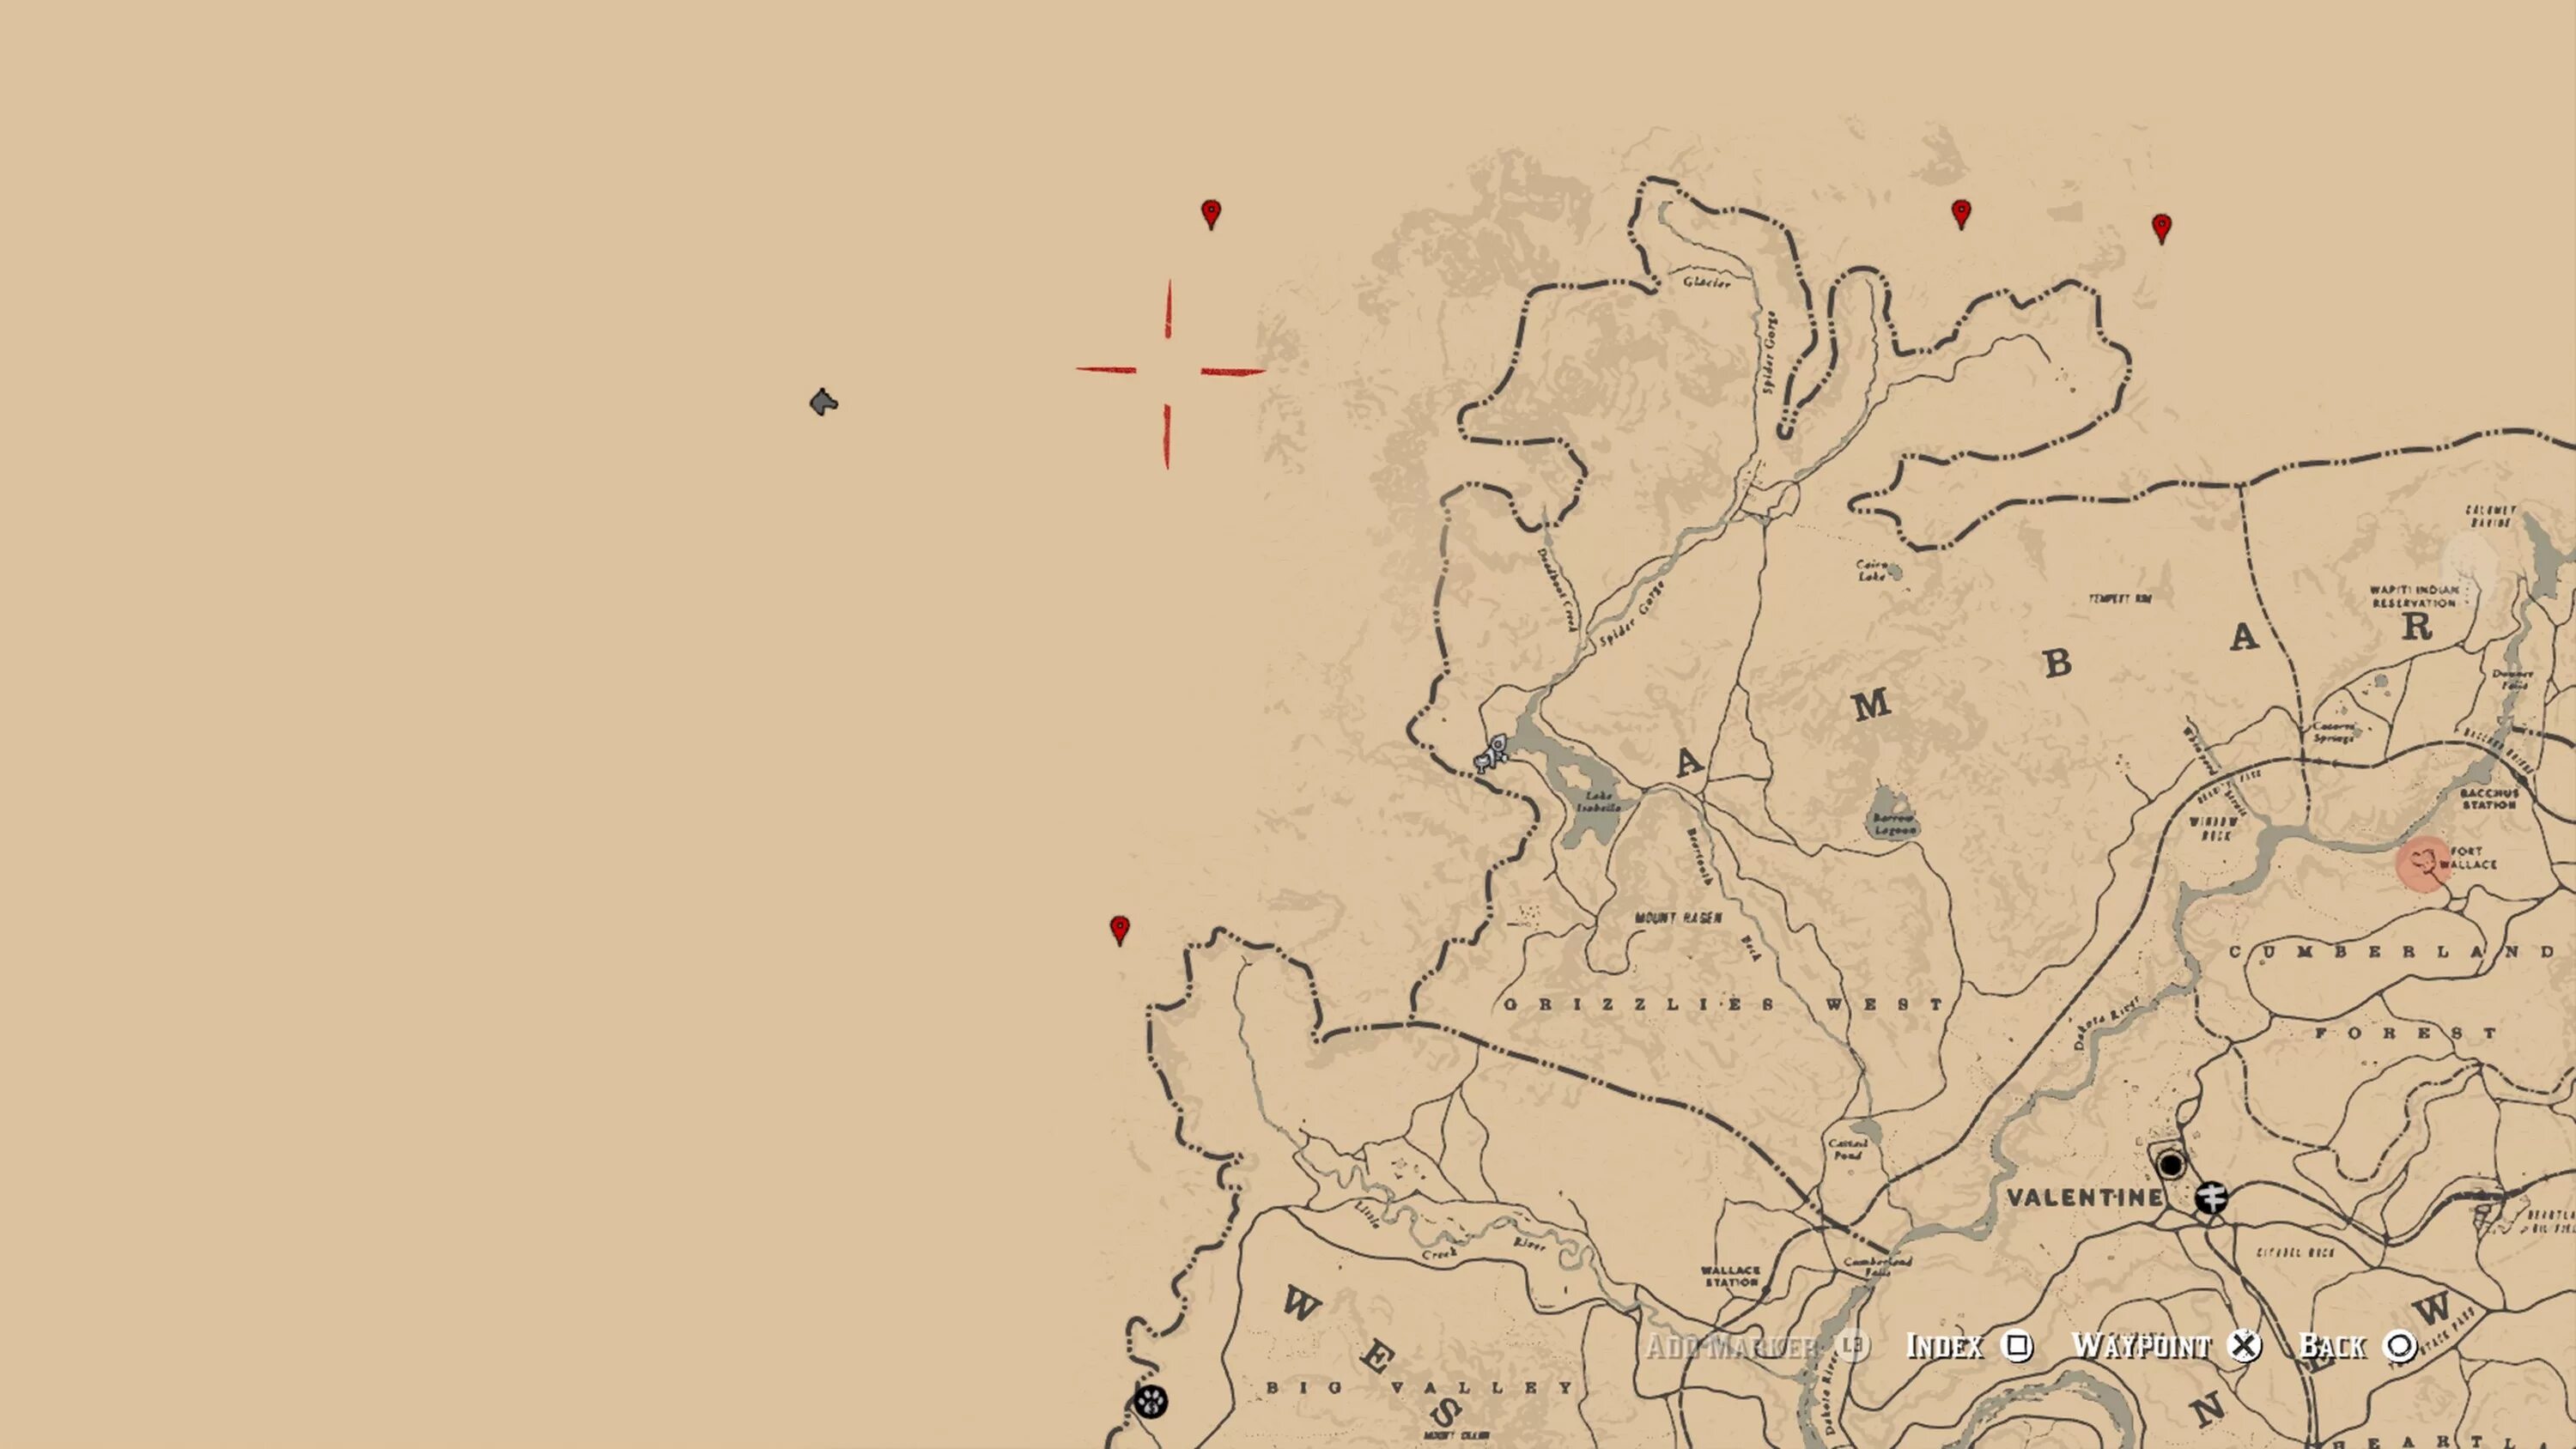 Хижина уотсонов в рдр. Карта золотых слитков rdr 2. Red Dead Redemption 2 слитки золота карта. Карта rdr 2. Карта сокровищ чика в РДР 2 на карте.